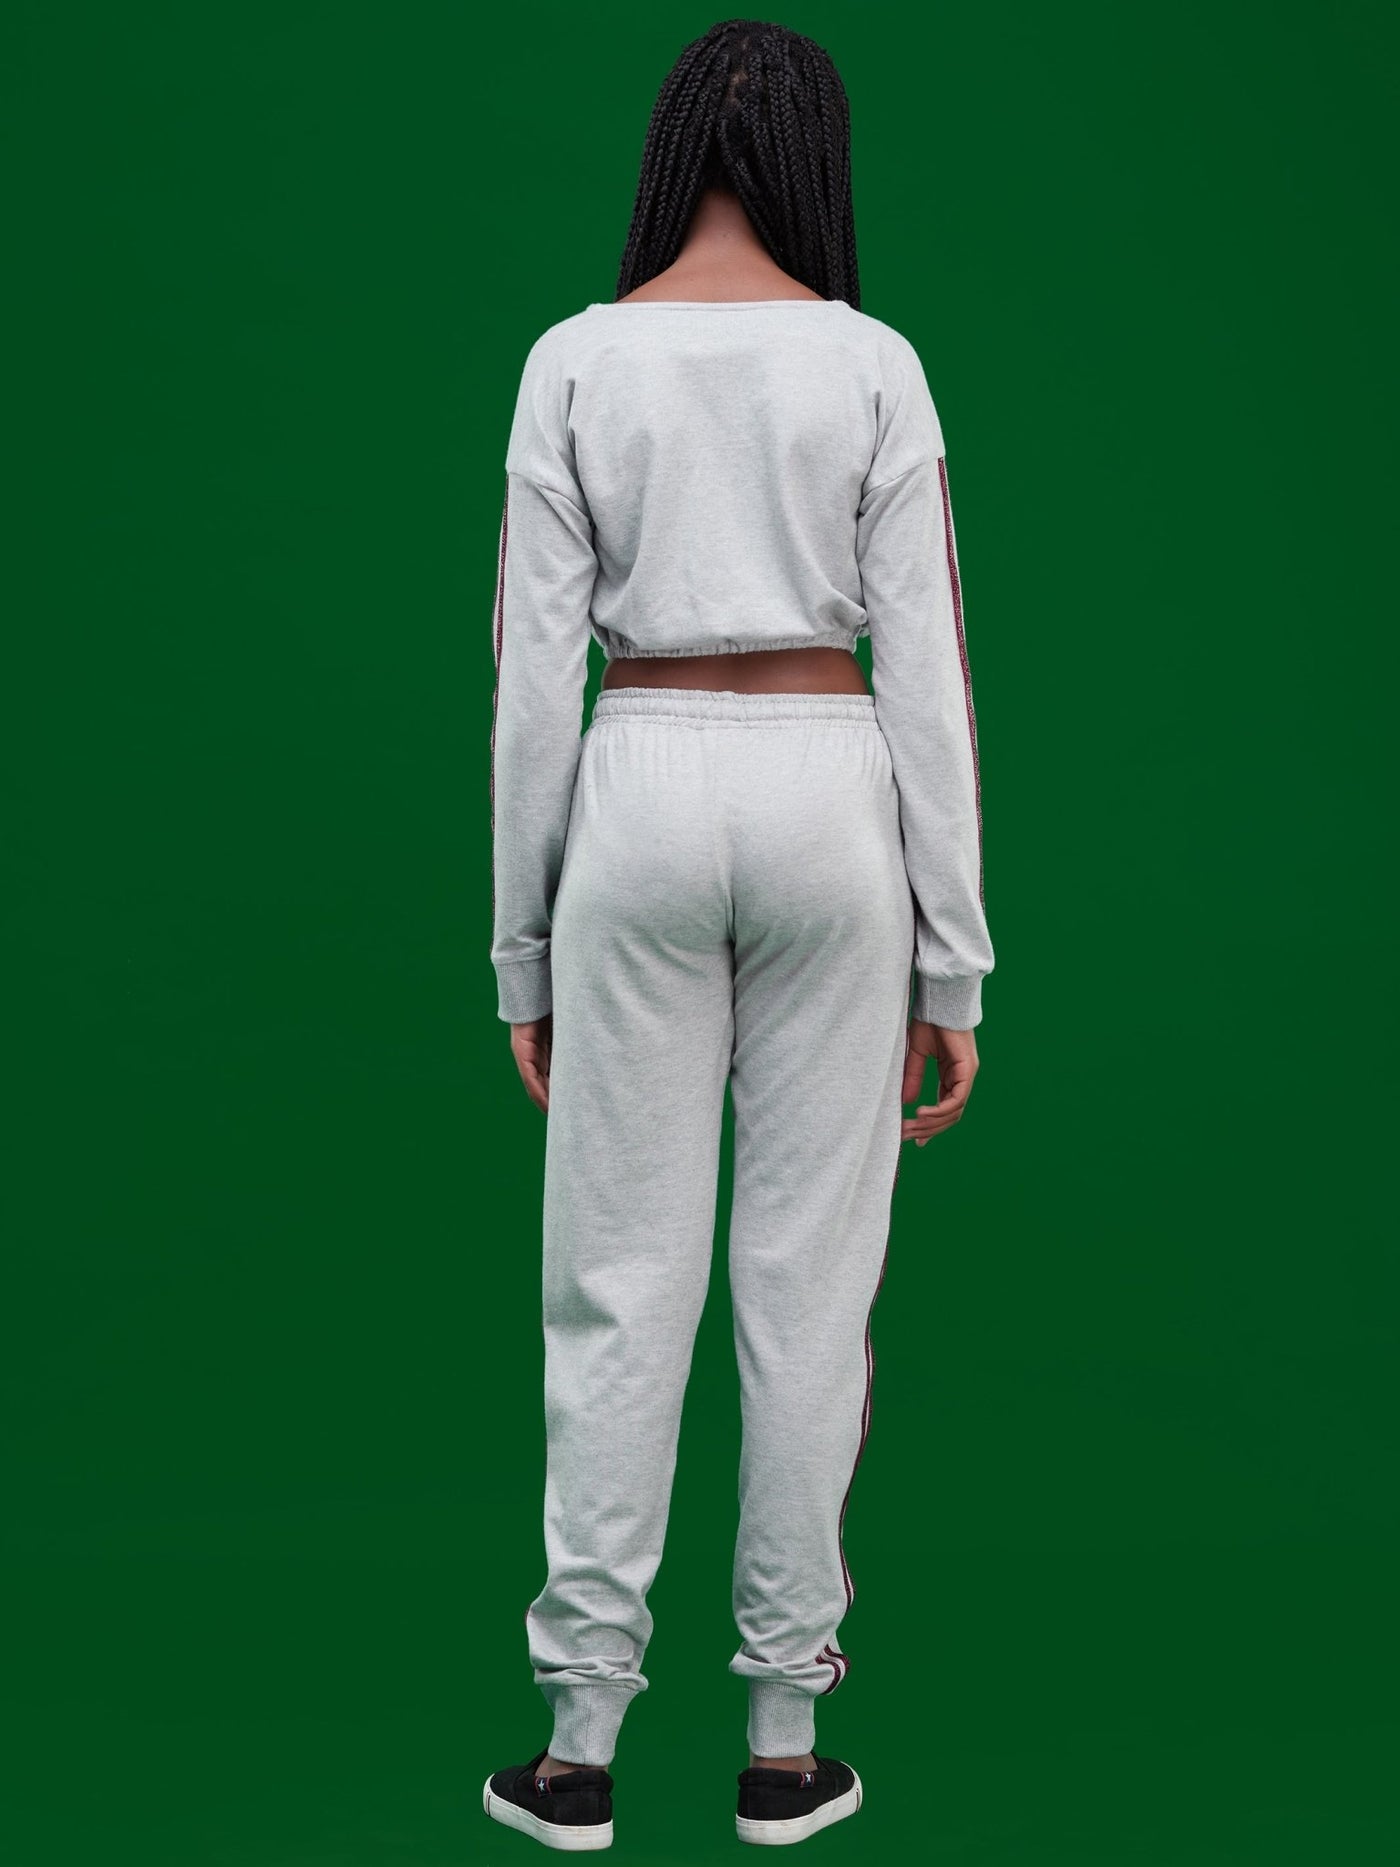 Davids Mng'arizo Slim Fit Collection Style 2 - Light Grey - Shop Zetu Kenya